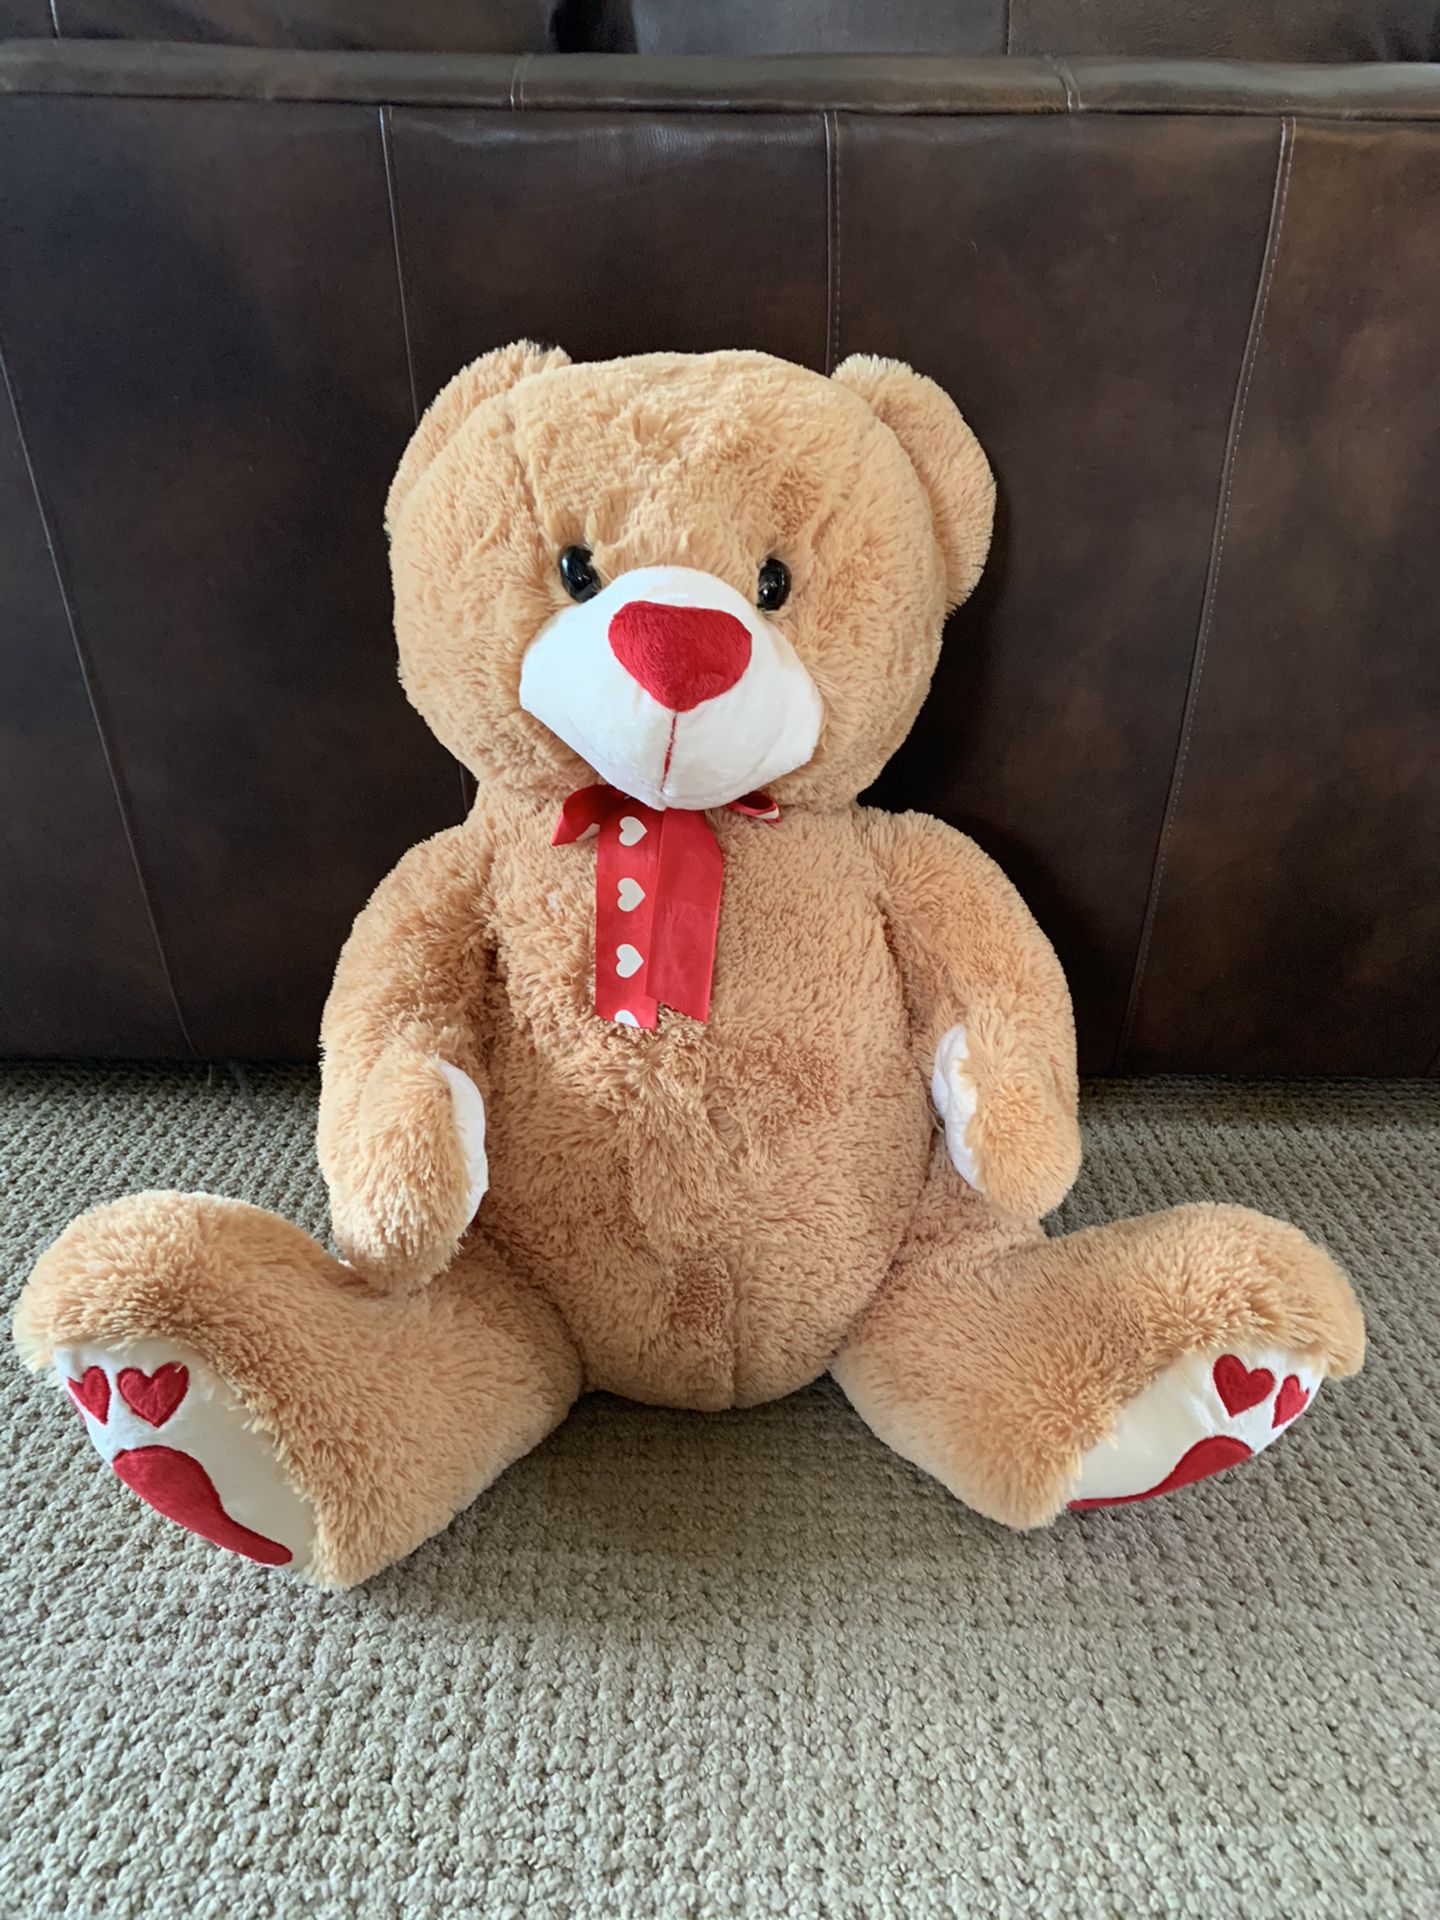 Giant Teddy Bear 